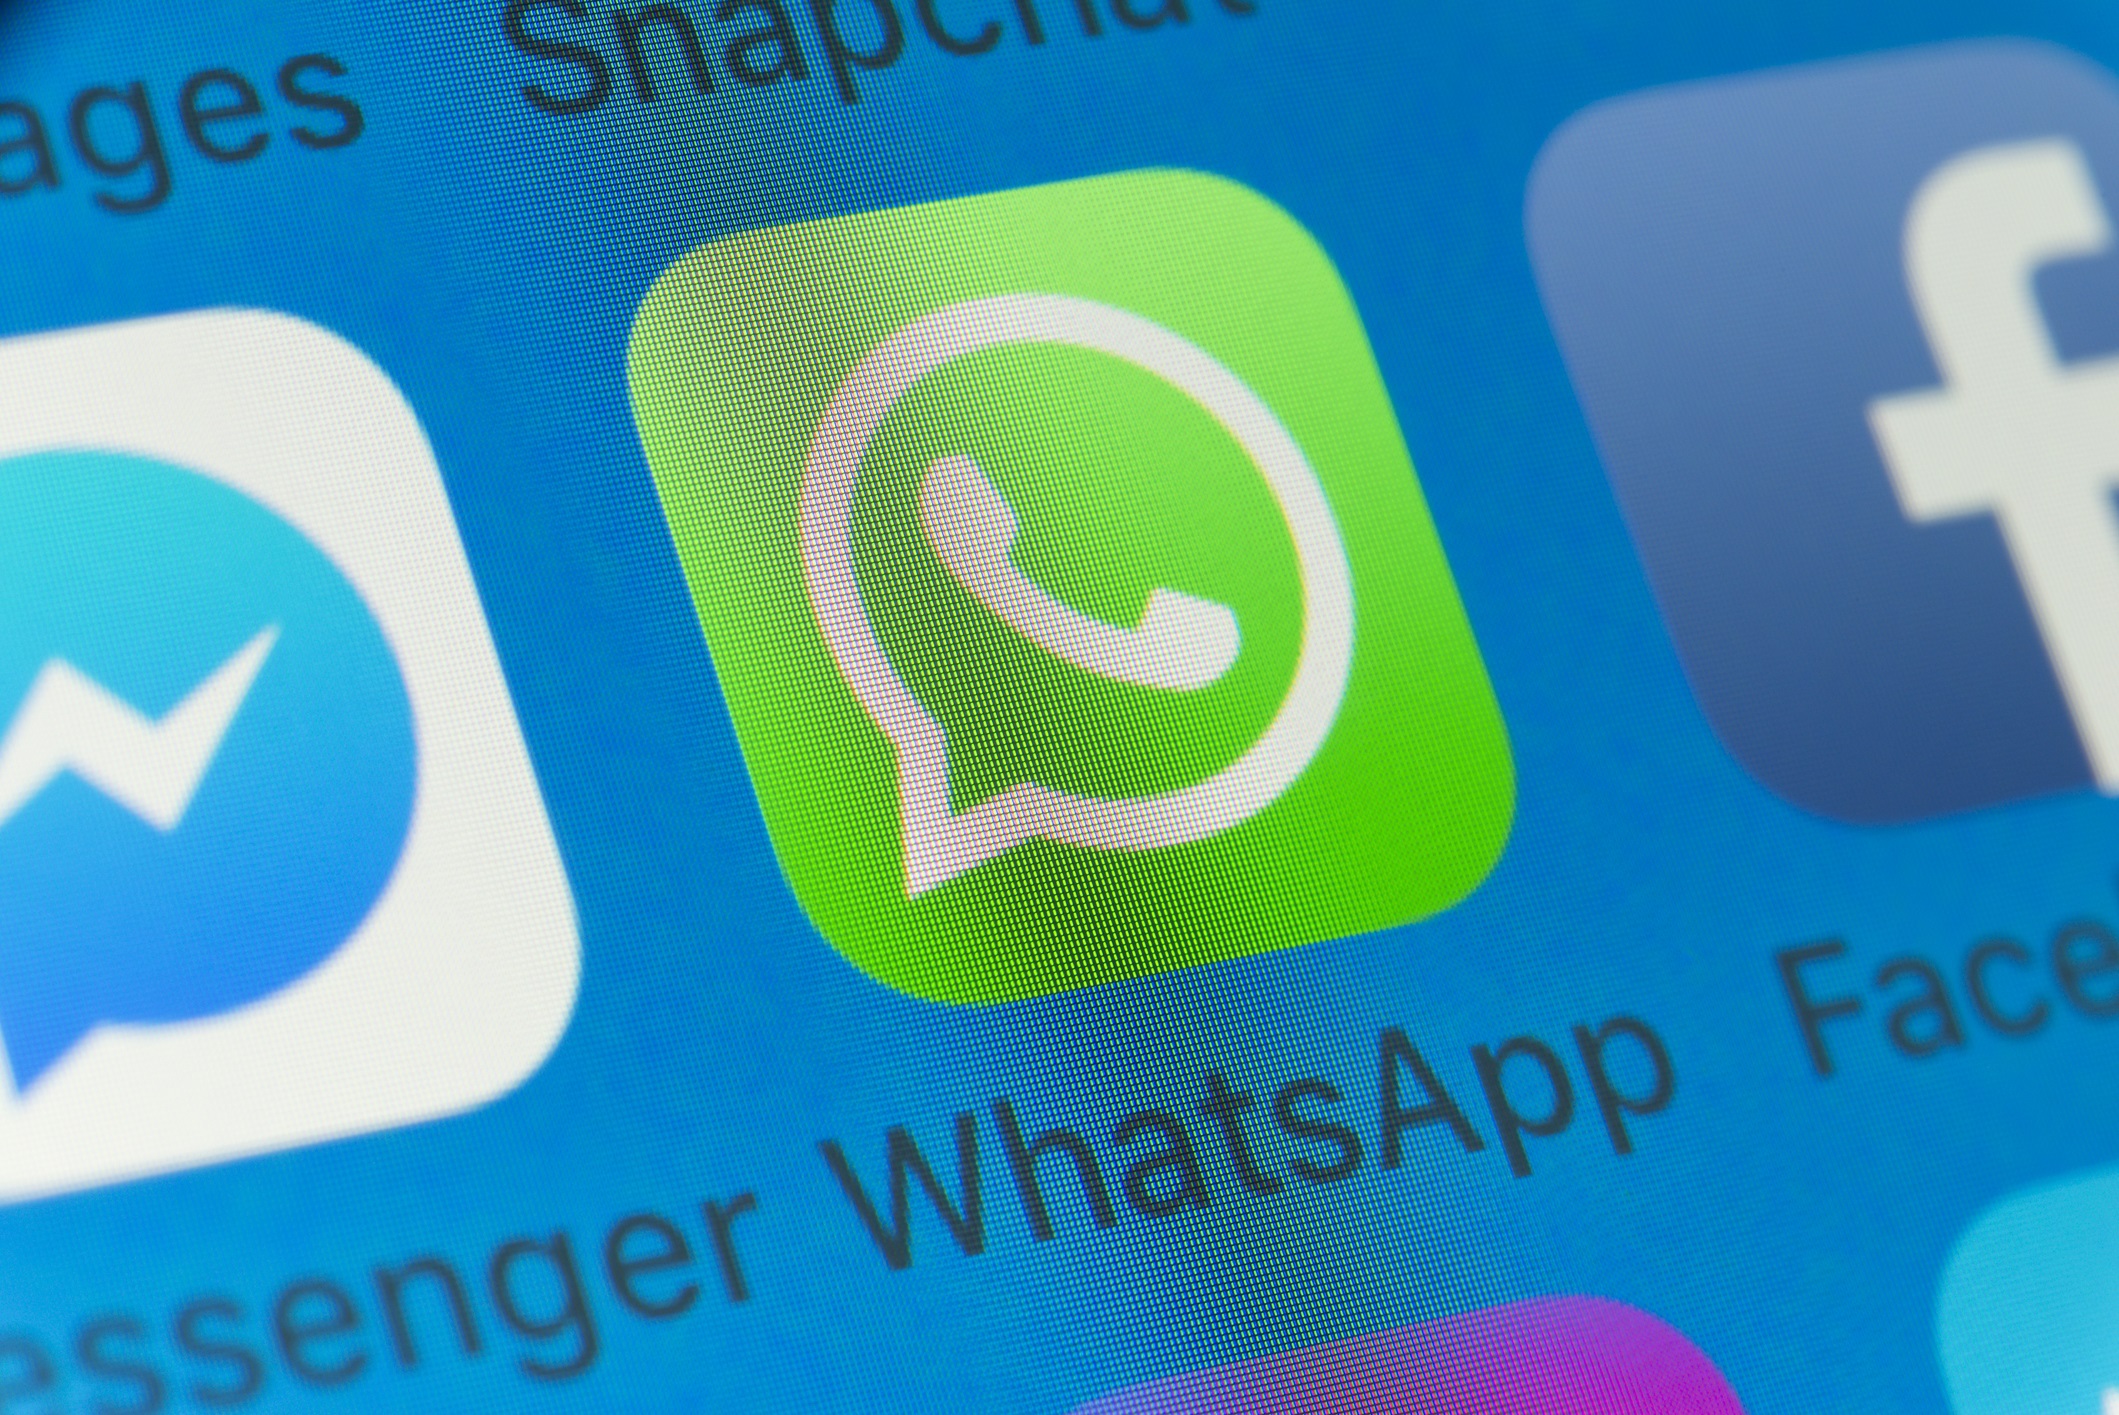 WhatsApp vai te incentivar a falar com quem você nunca conversou antes; entenda